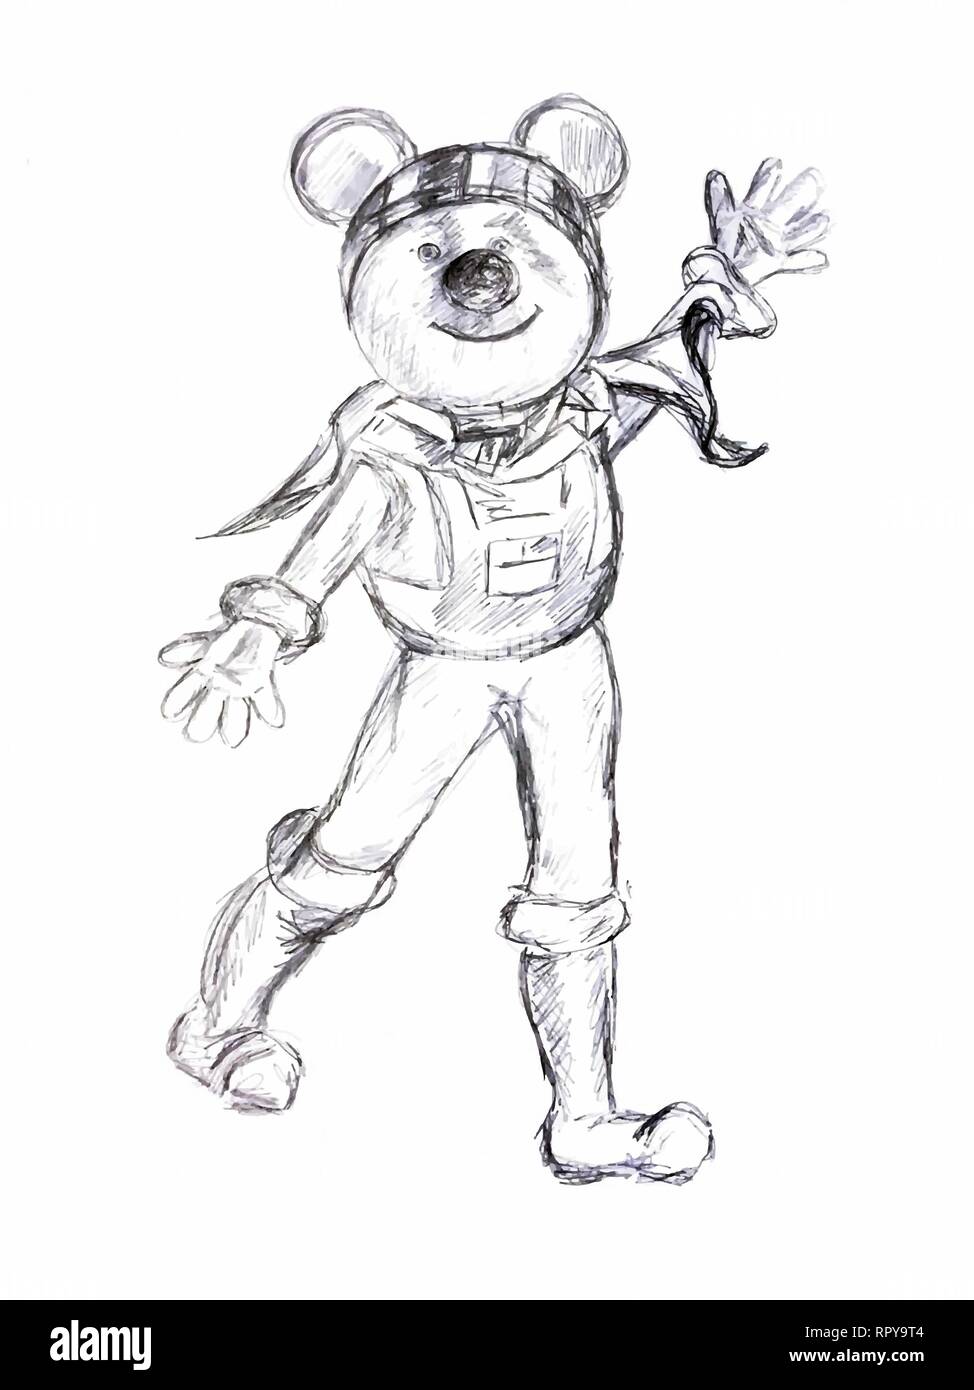 Cartoon alien carattere come un orso con le orecchie grandi e vestito con una tuta spaziale. l'immagine è disegnata con una matita. Illustrazione Vettoriale